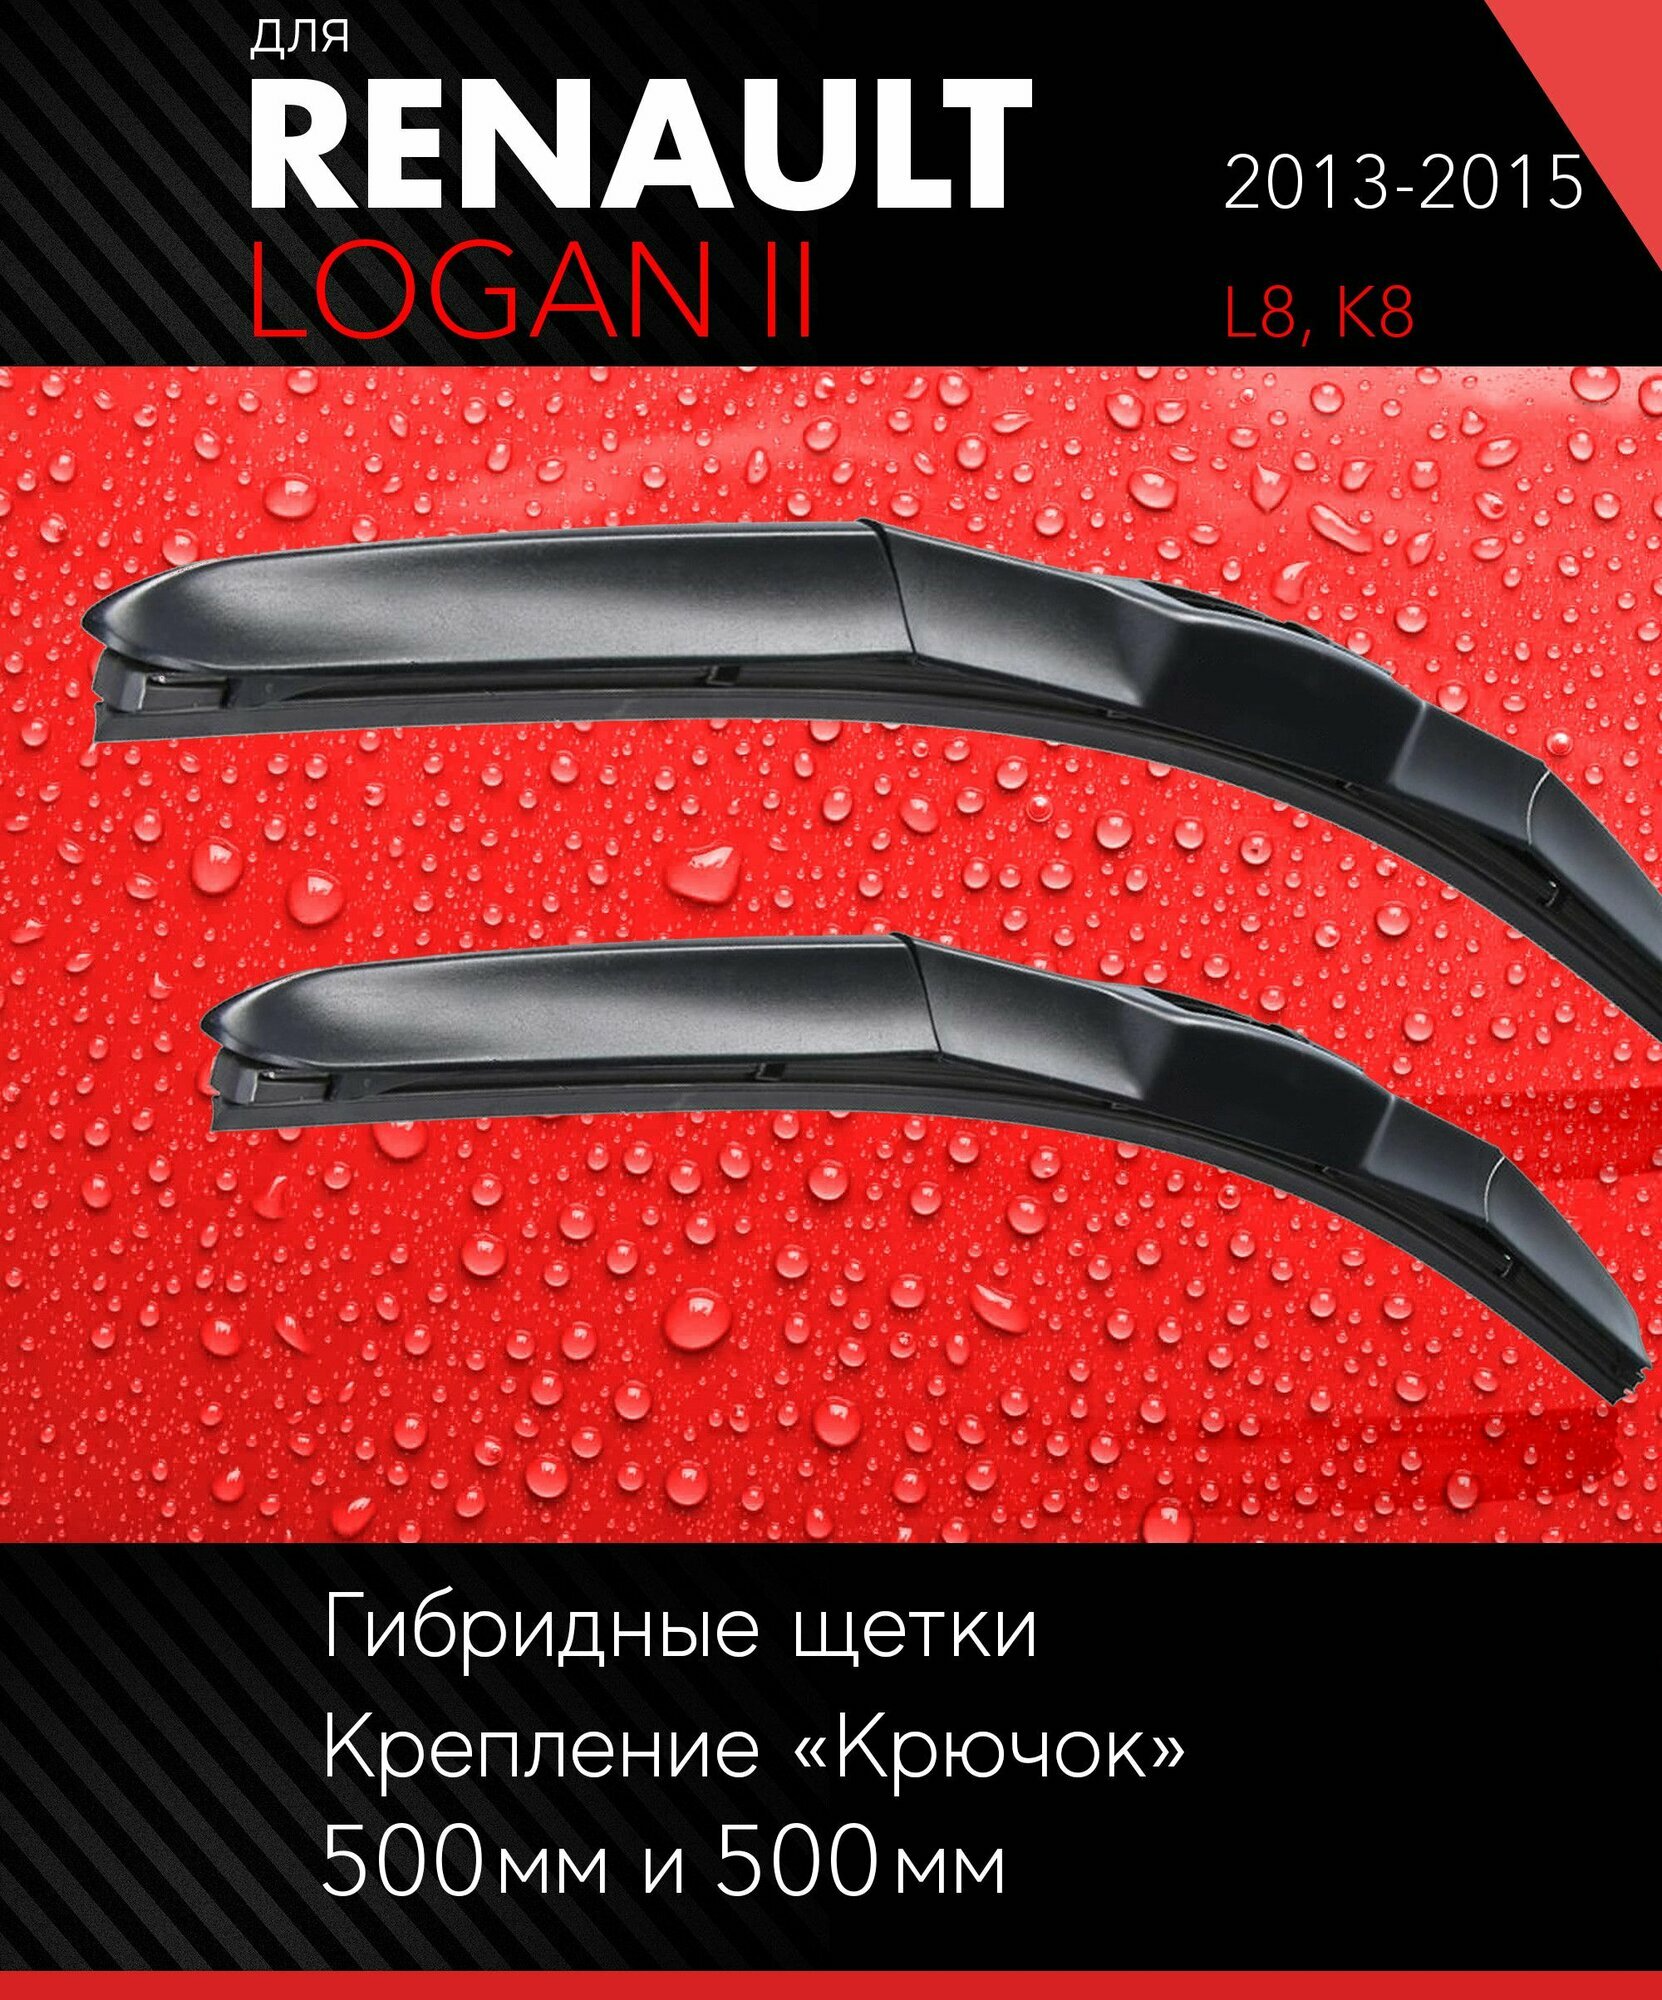 2 щетки стеклоочистителя 500 500 мм на Рено Логан 2 2013-2015 гибридные дворники комплект для Renault Logan II (L8 K8) - Autoled